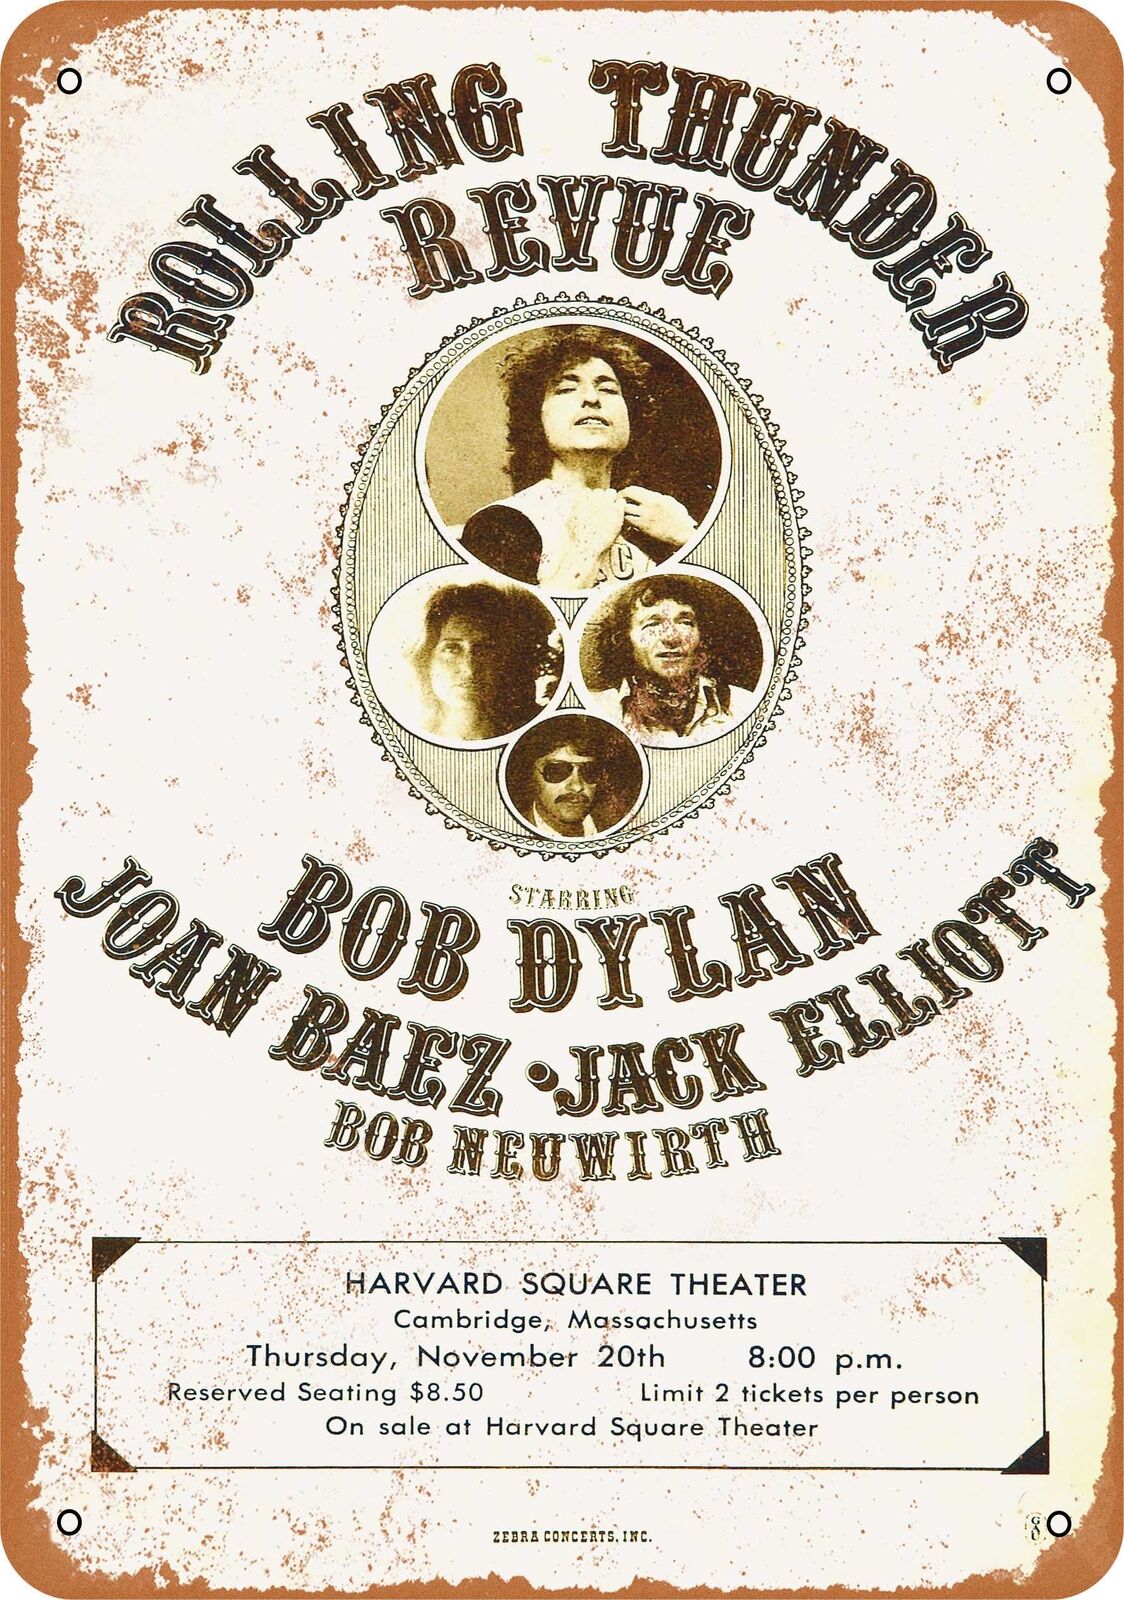 Metal Sign - 1975 Bob Dylan and Joan Baez at Harvard - Vintage Look Rep